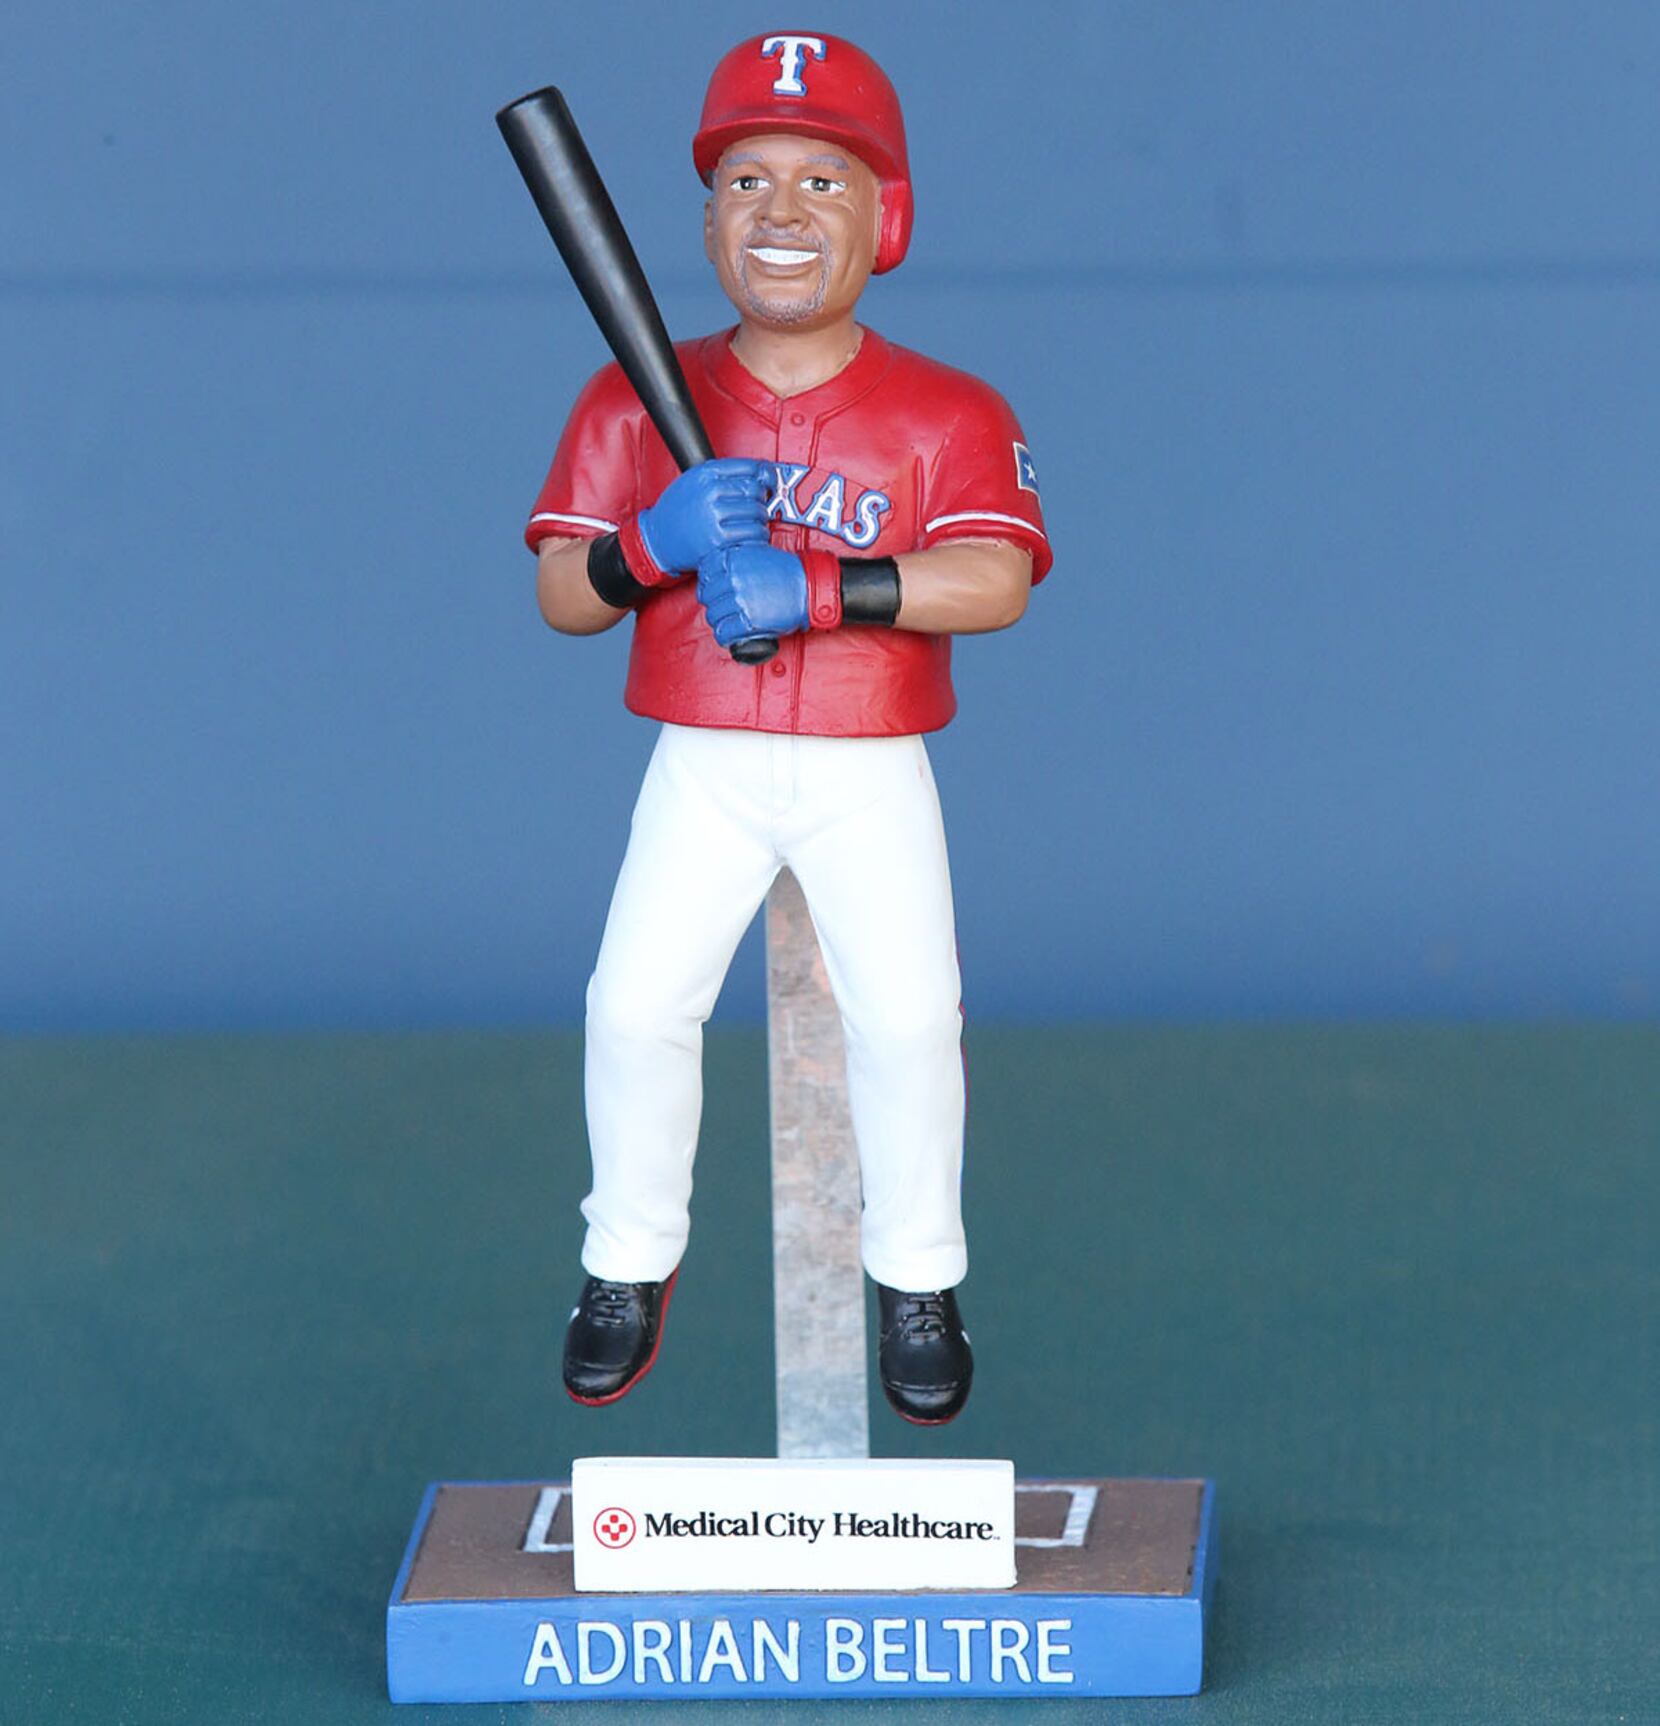 2017 Adrian Beltre Dancing Legs Bobble Texas Rangers MLB Baseball